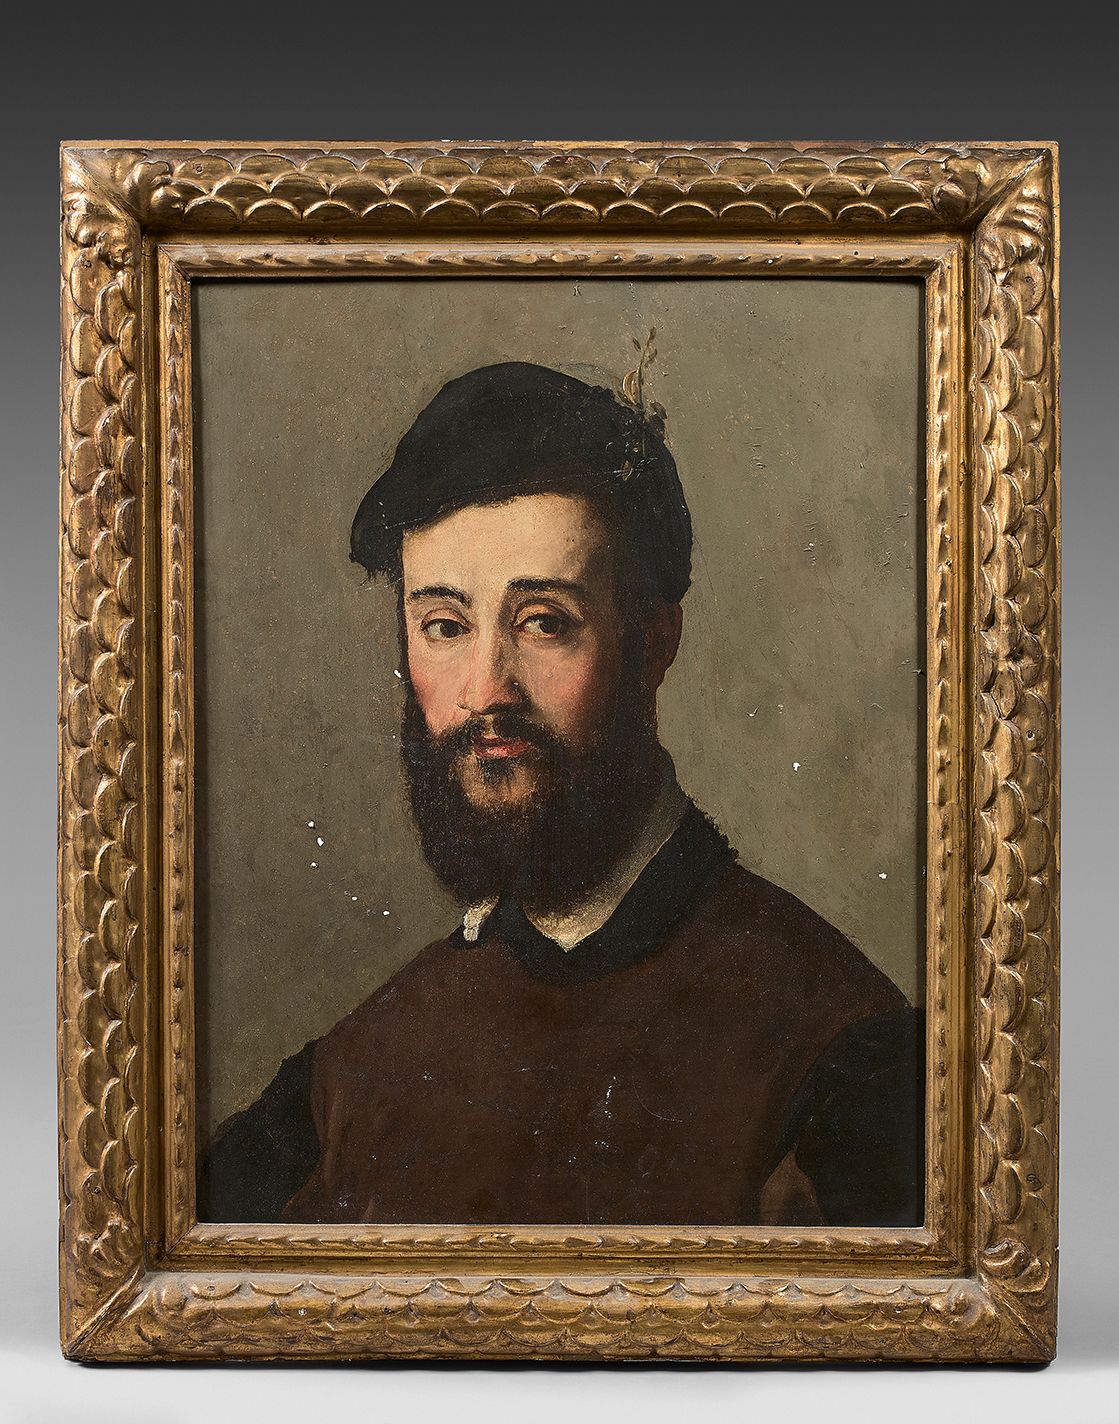 Ecole Italienne du XIXe siècle Portrait of a man with a beard
Reinforced poplar &hellip;